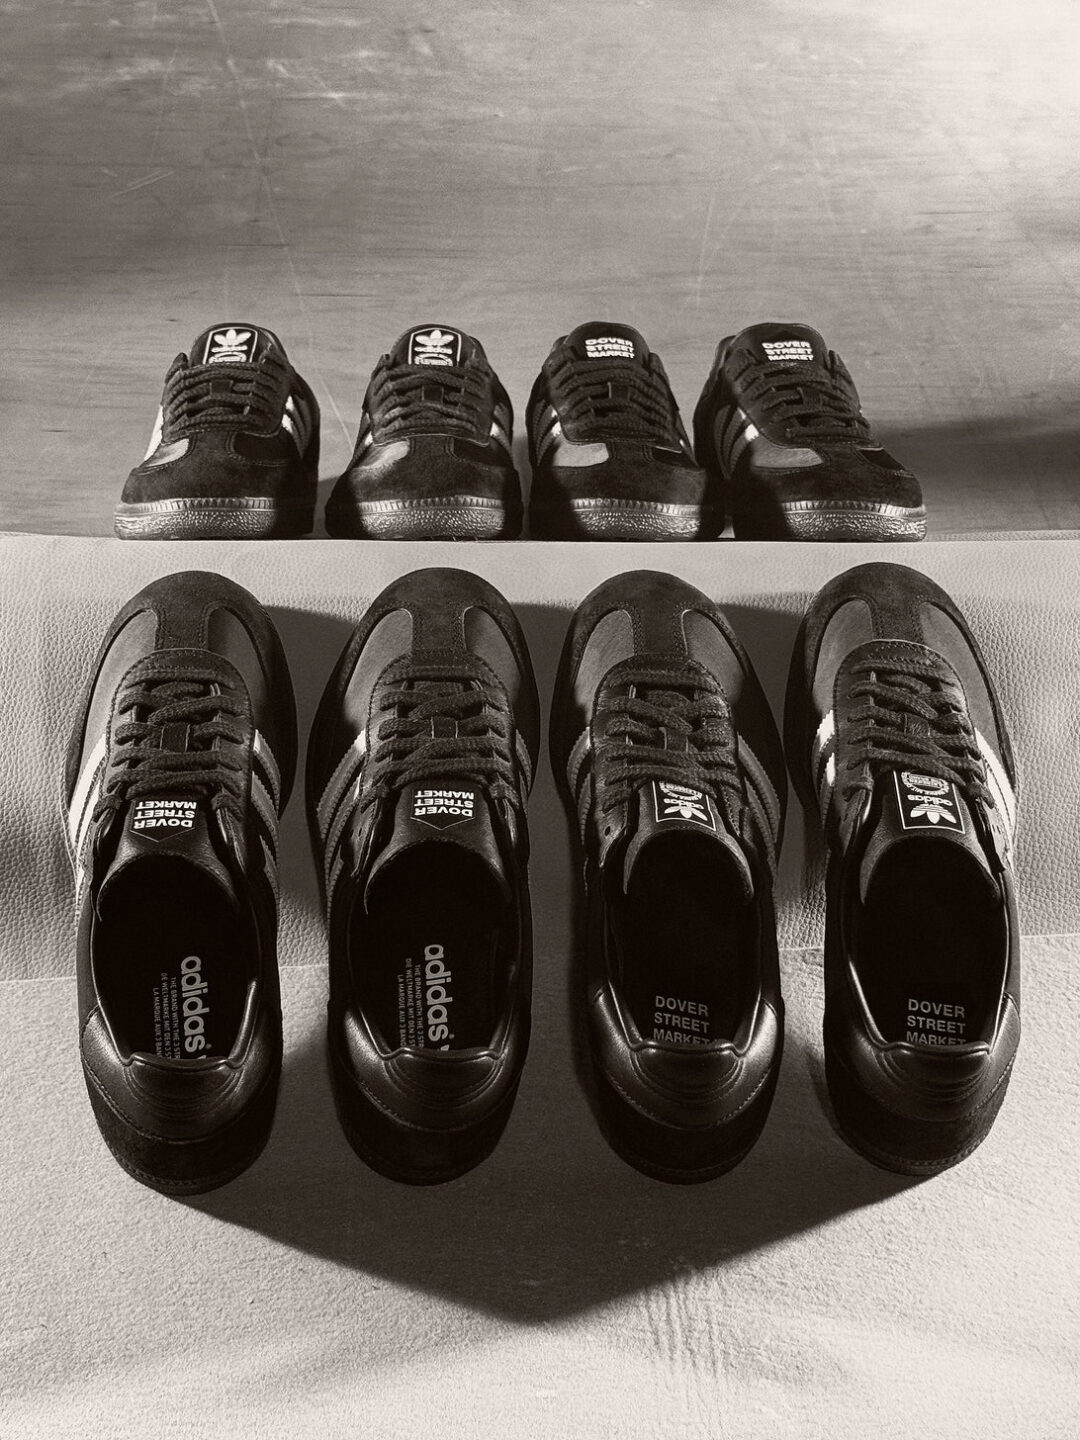 【国内 2024年 5/16 発売】DOVER STREET MARKET × adidas Originals SAMBA “Core Black/Footwear White” (ドーバーストリートマーケット アディダス オリジナルス サンバ “ブラック/ホワイト”) [IH4979]